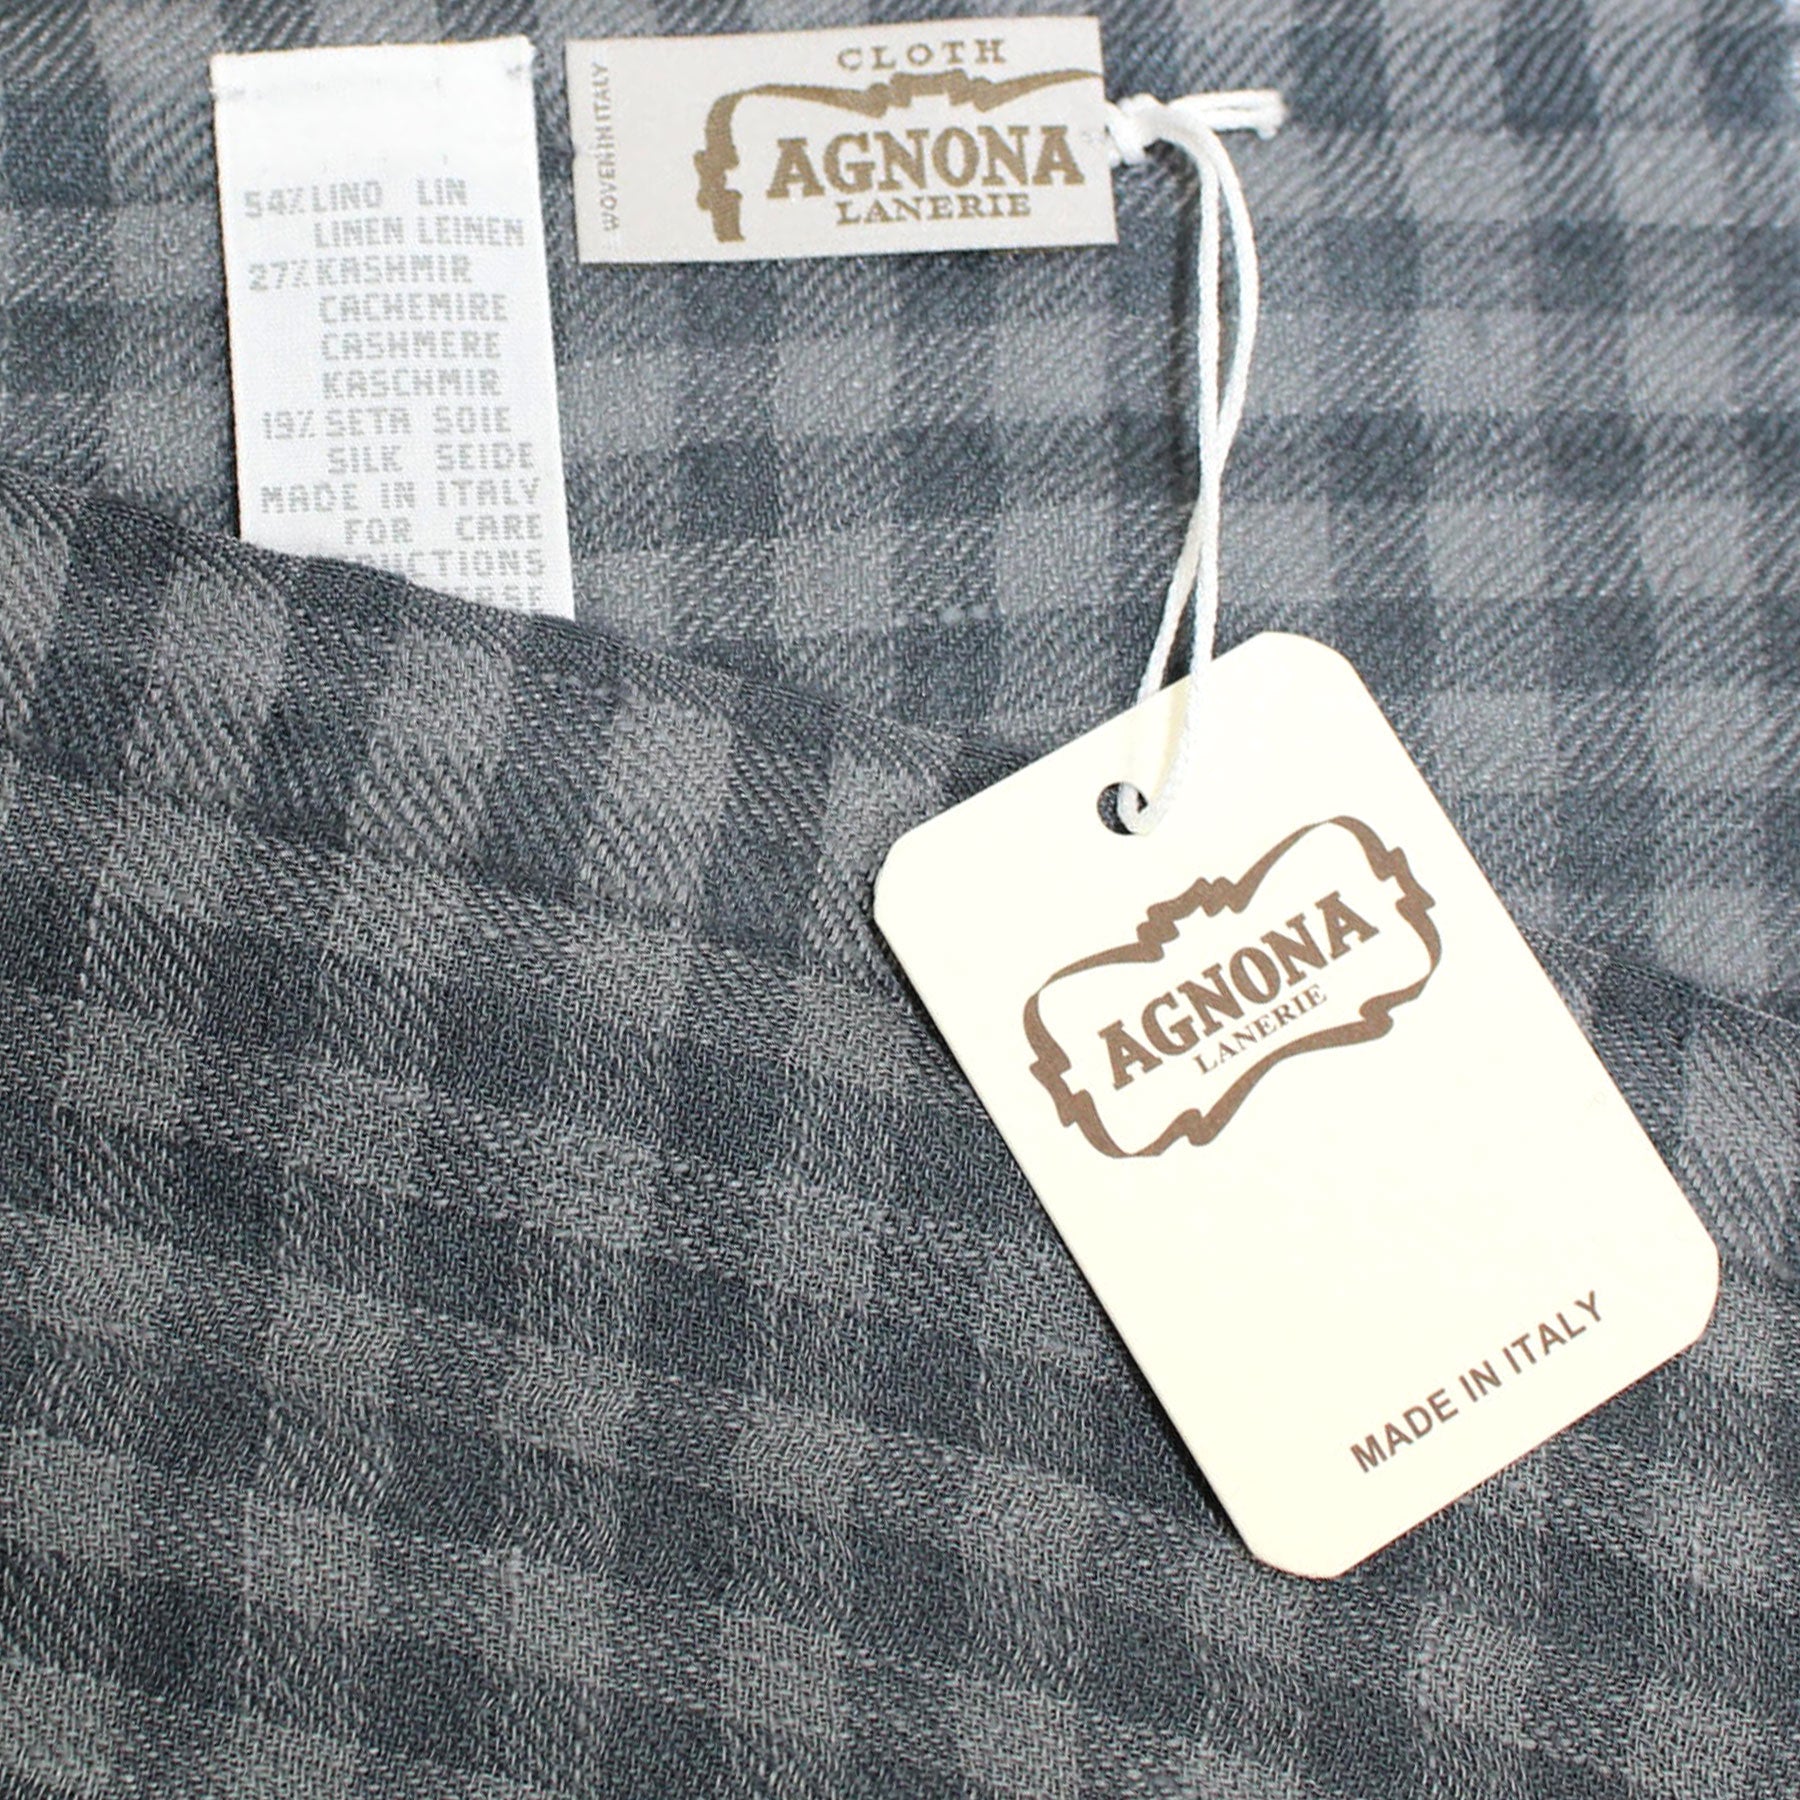 Agnona Scarf Gray Design - Luxury Linen Cashmere Silk Shawl